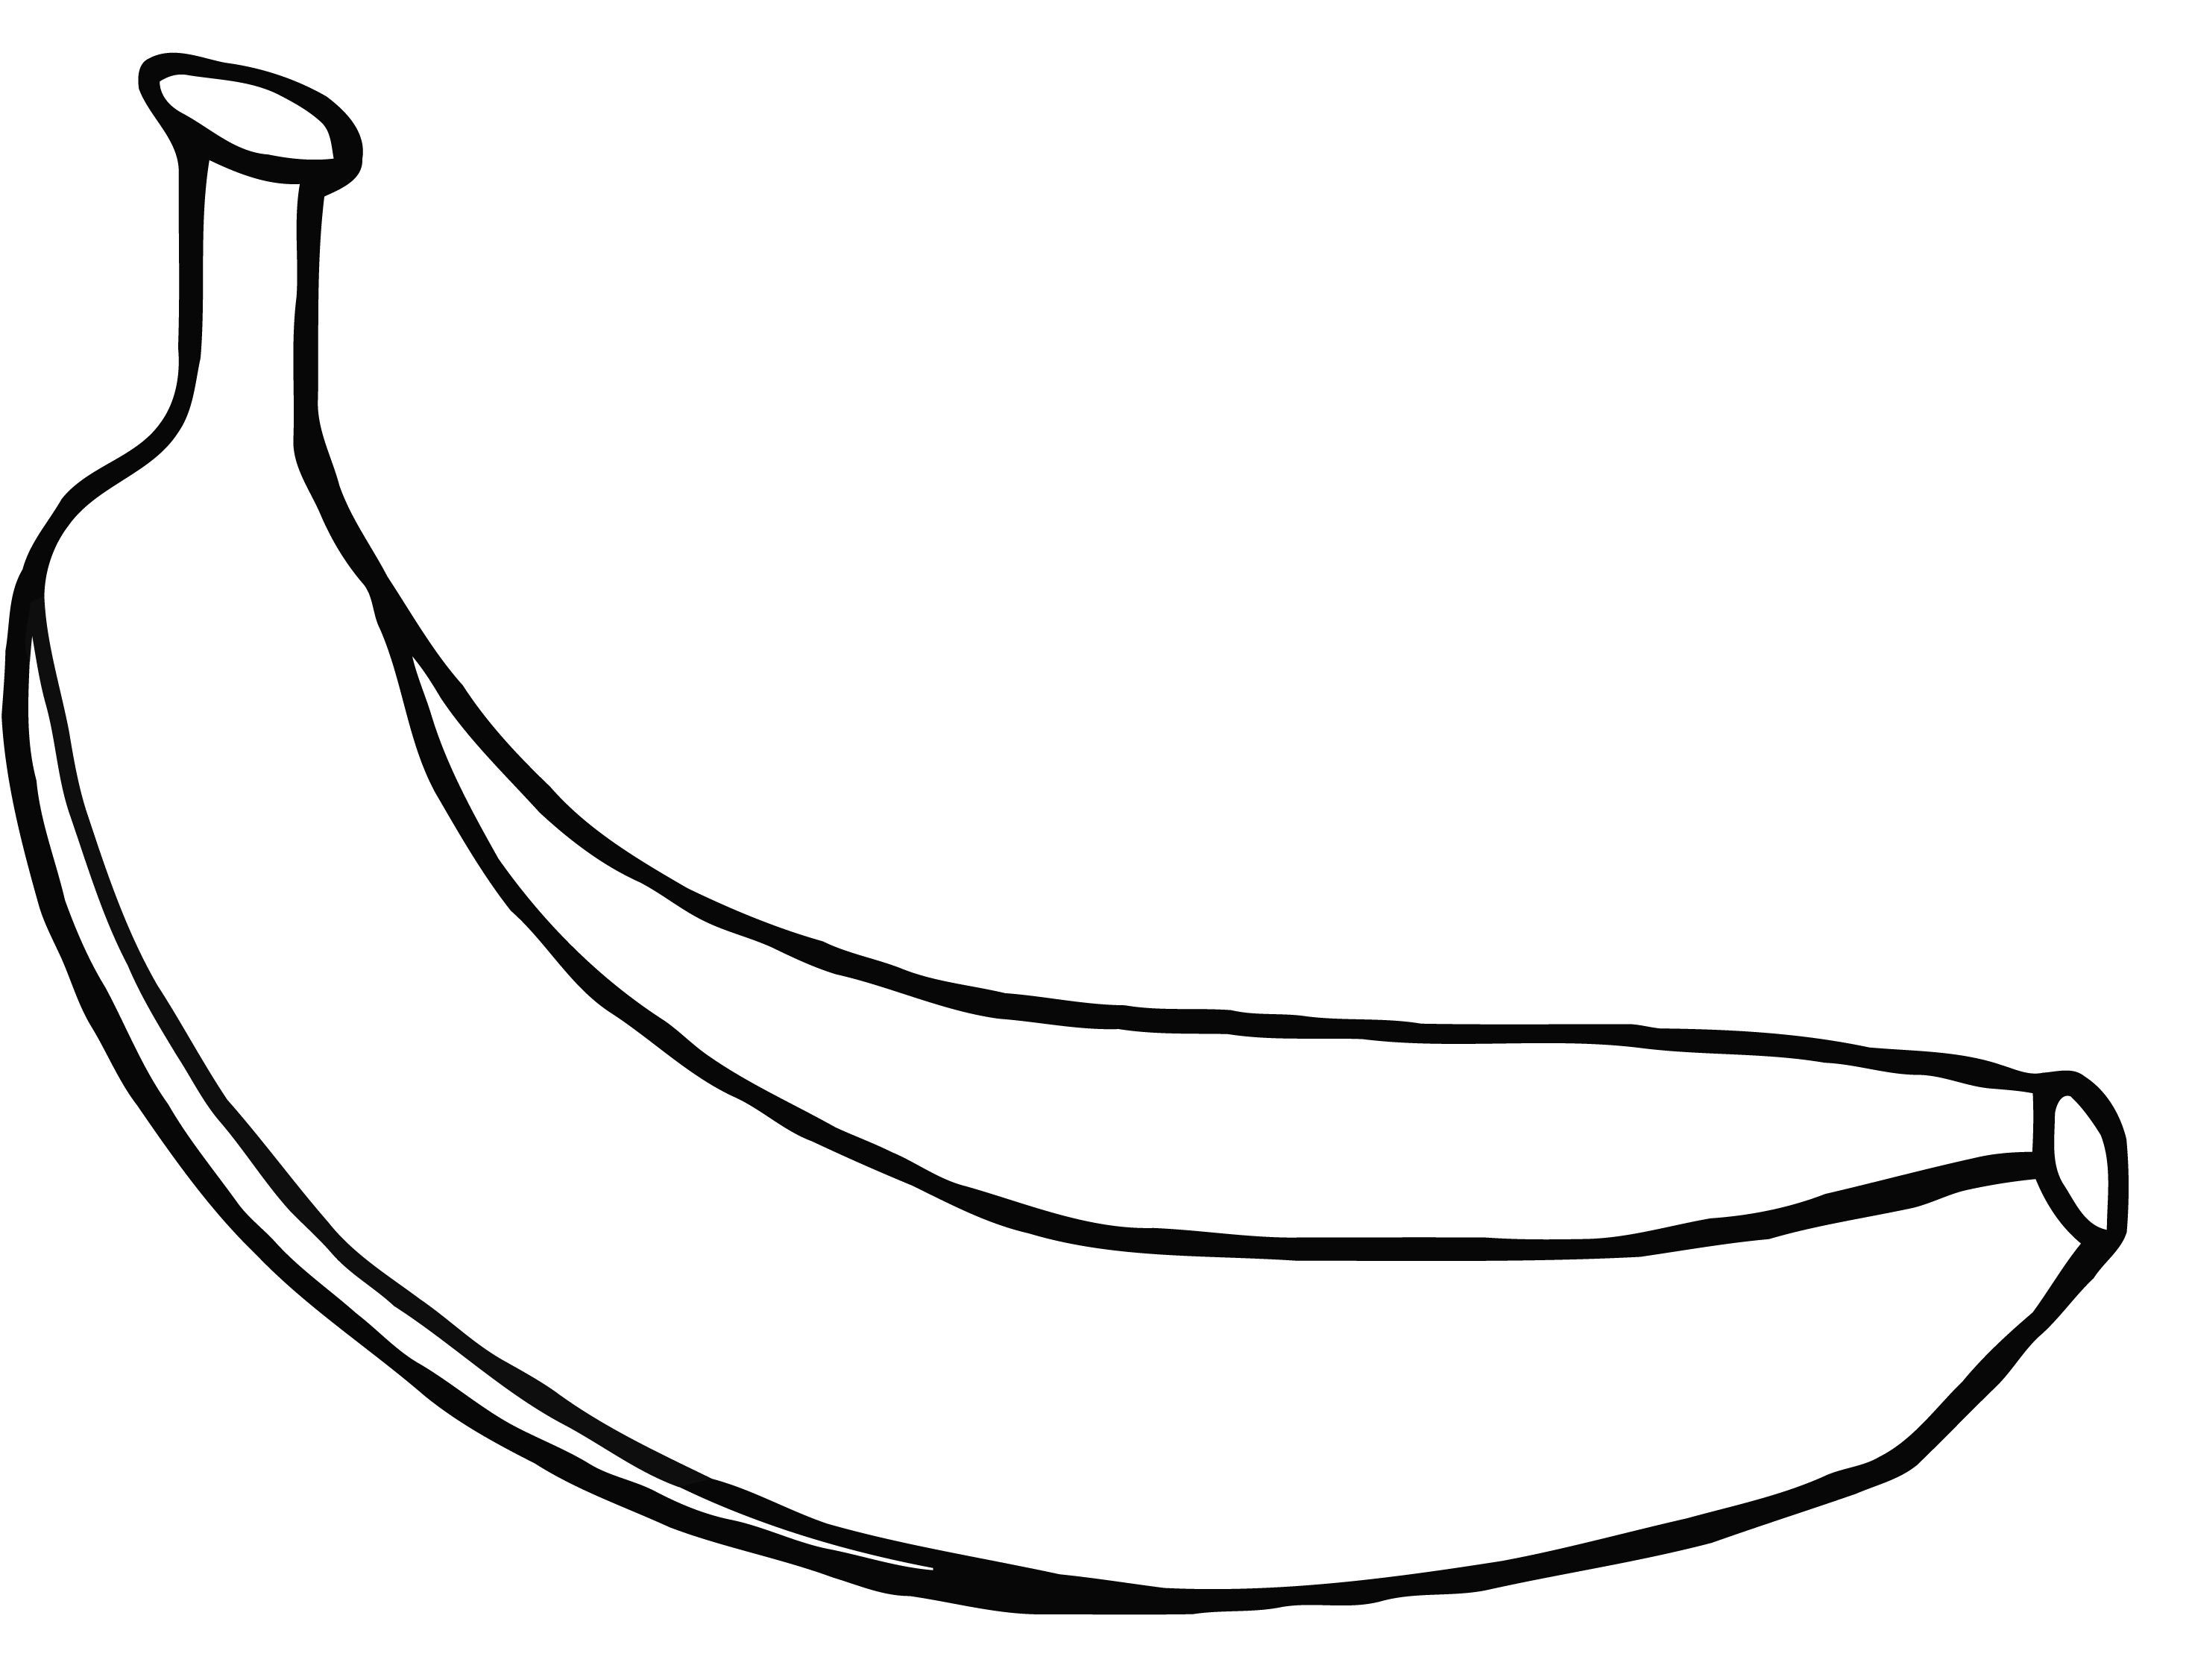 Drawn x free clip. Clipart banana coloring book